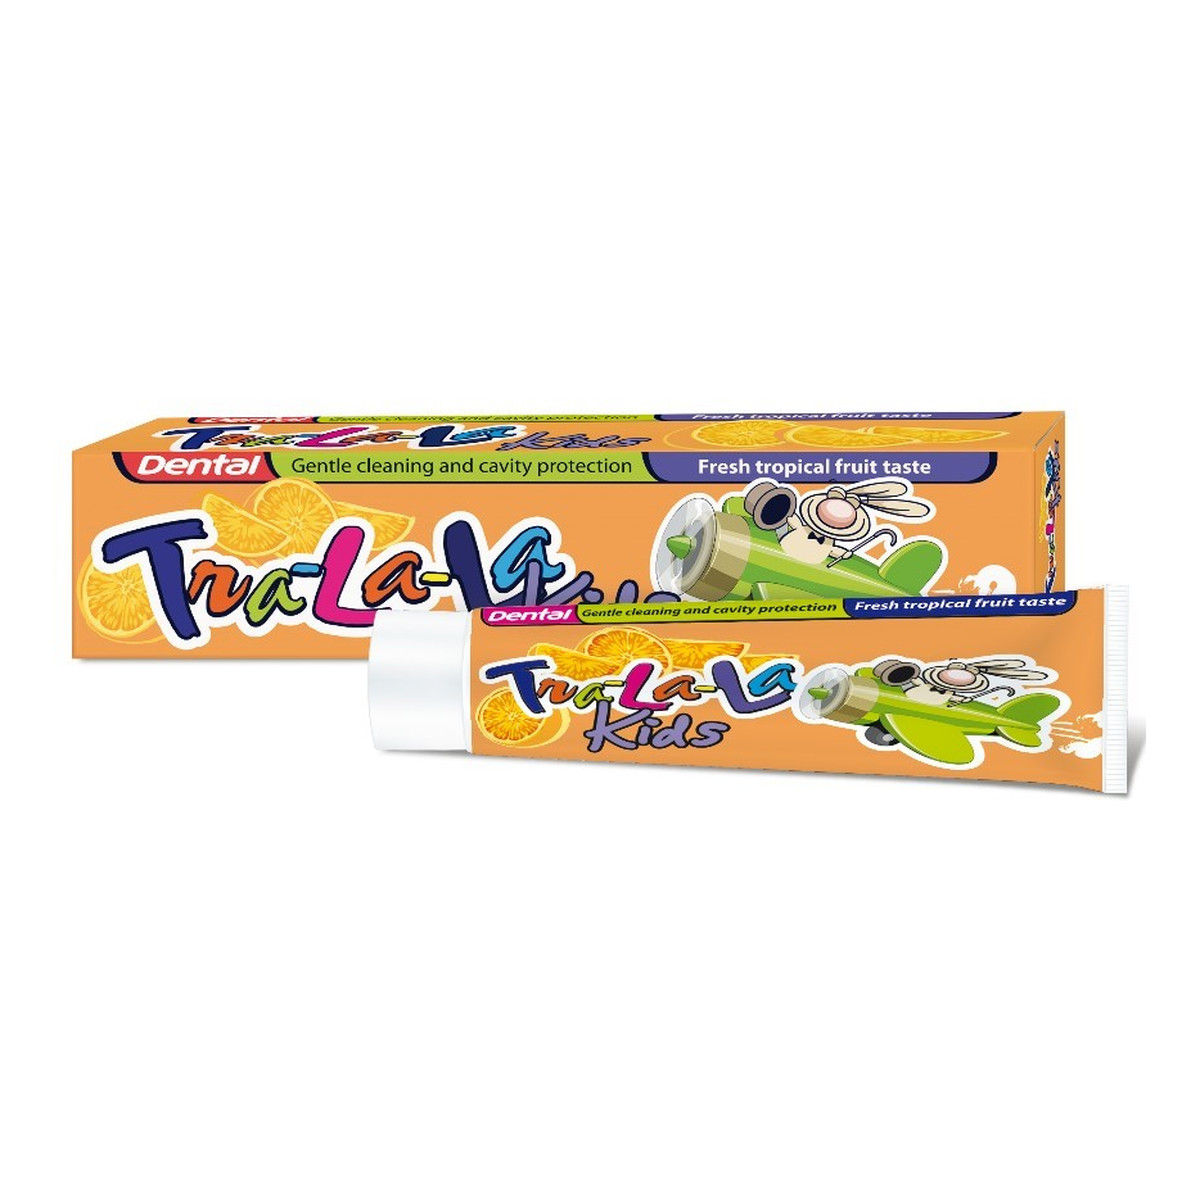 Dental Tra-la-la pasta do zębów dla dzieci o smaku tropikalnych owoców 50ml